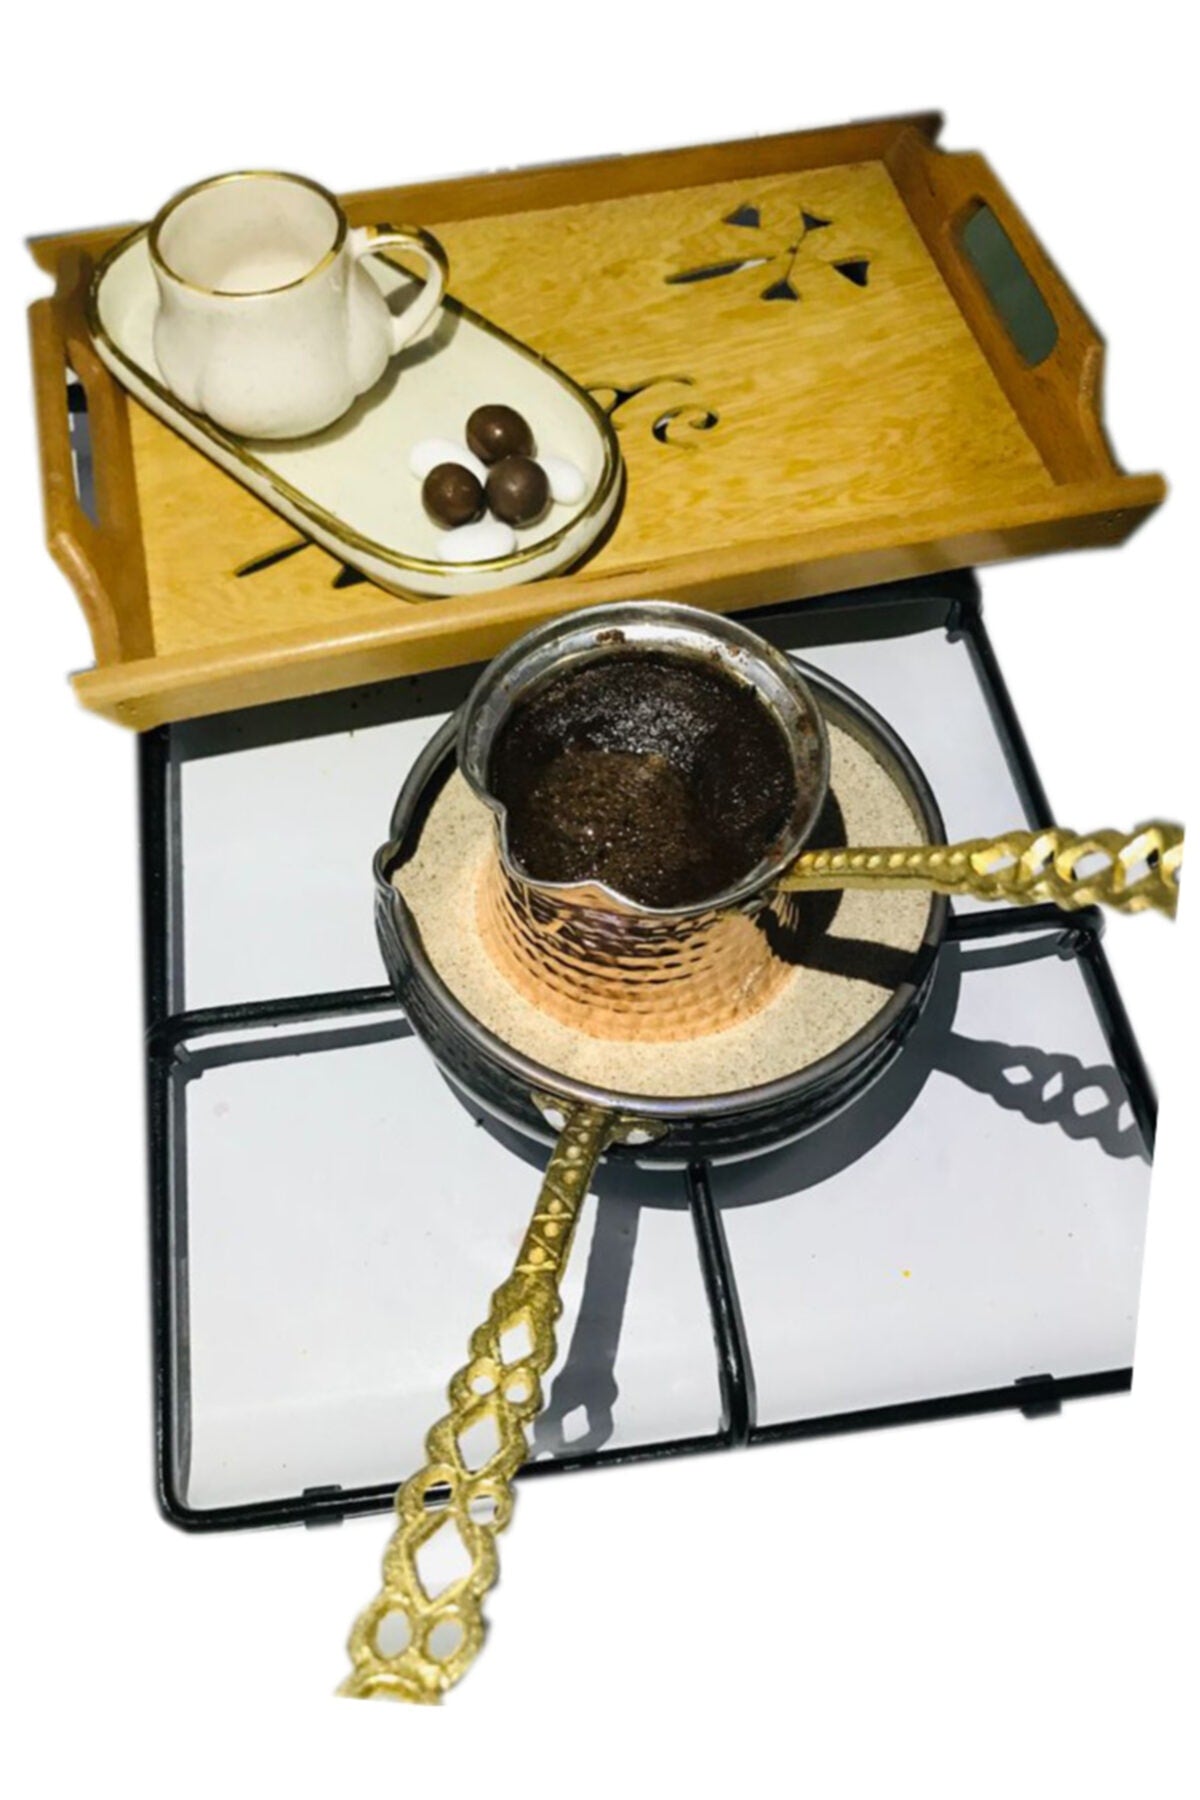 Турецкая Кофеварка на Горячем Песке: Медная Машина для Приготовления Напитка от OZBA STORE